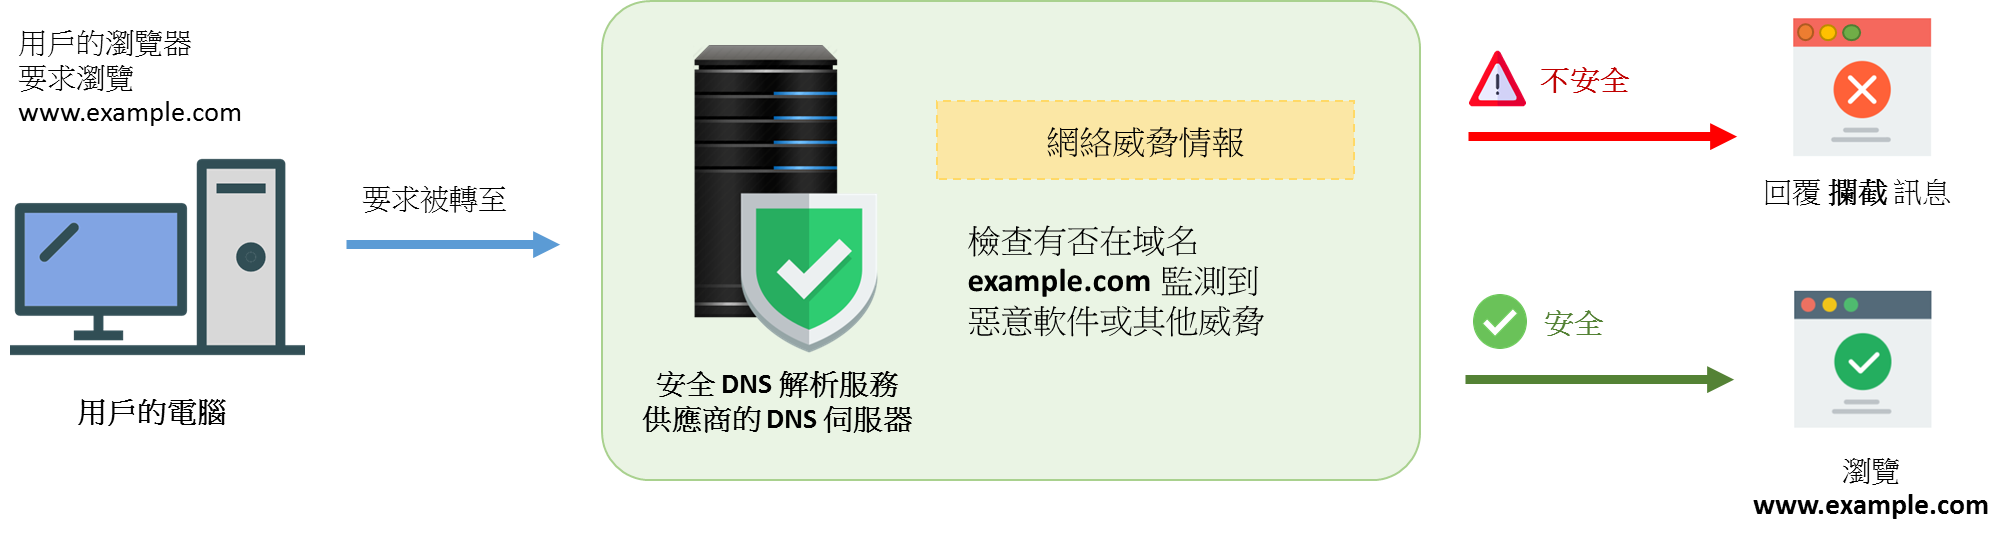 安全的 DNS 解析服务的图像